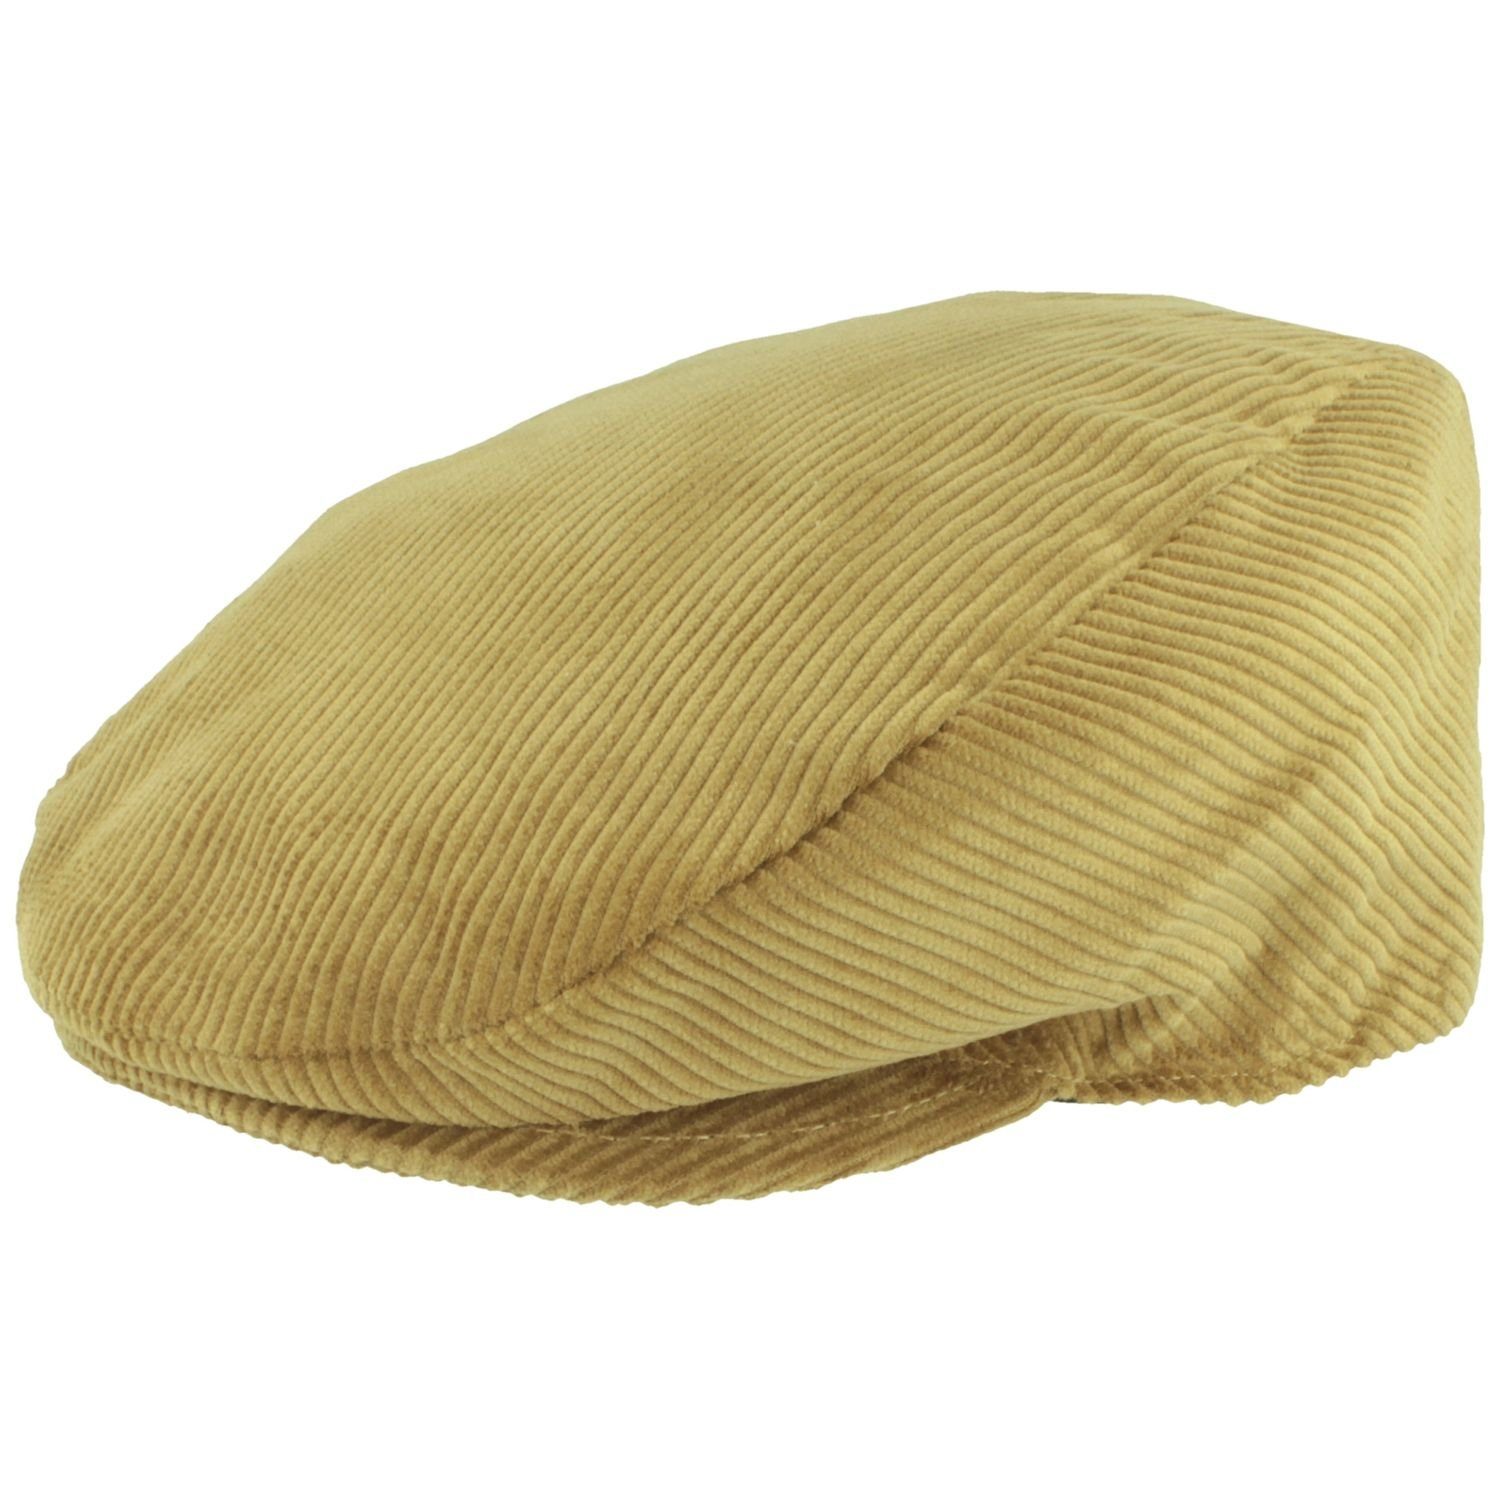 Breiter Schiebermütze Flatcap aus Baumwolle mit Cord-Streifen